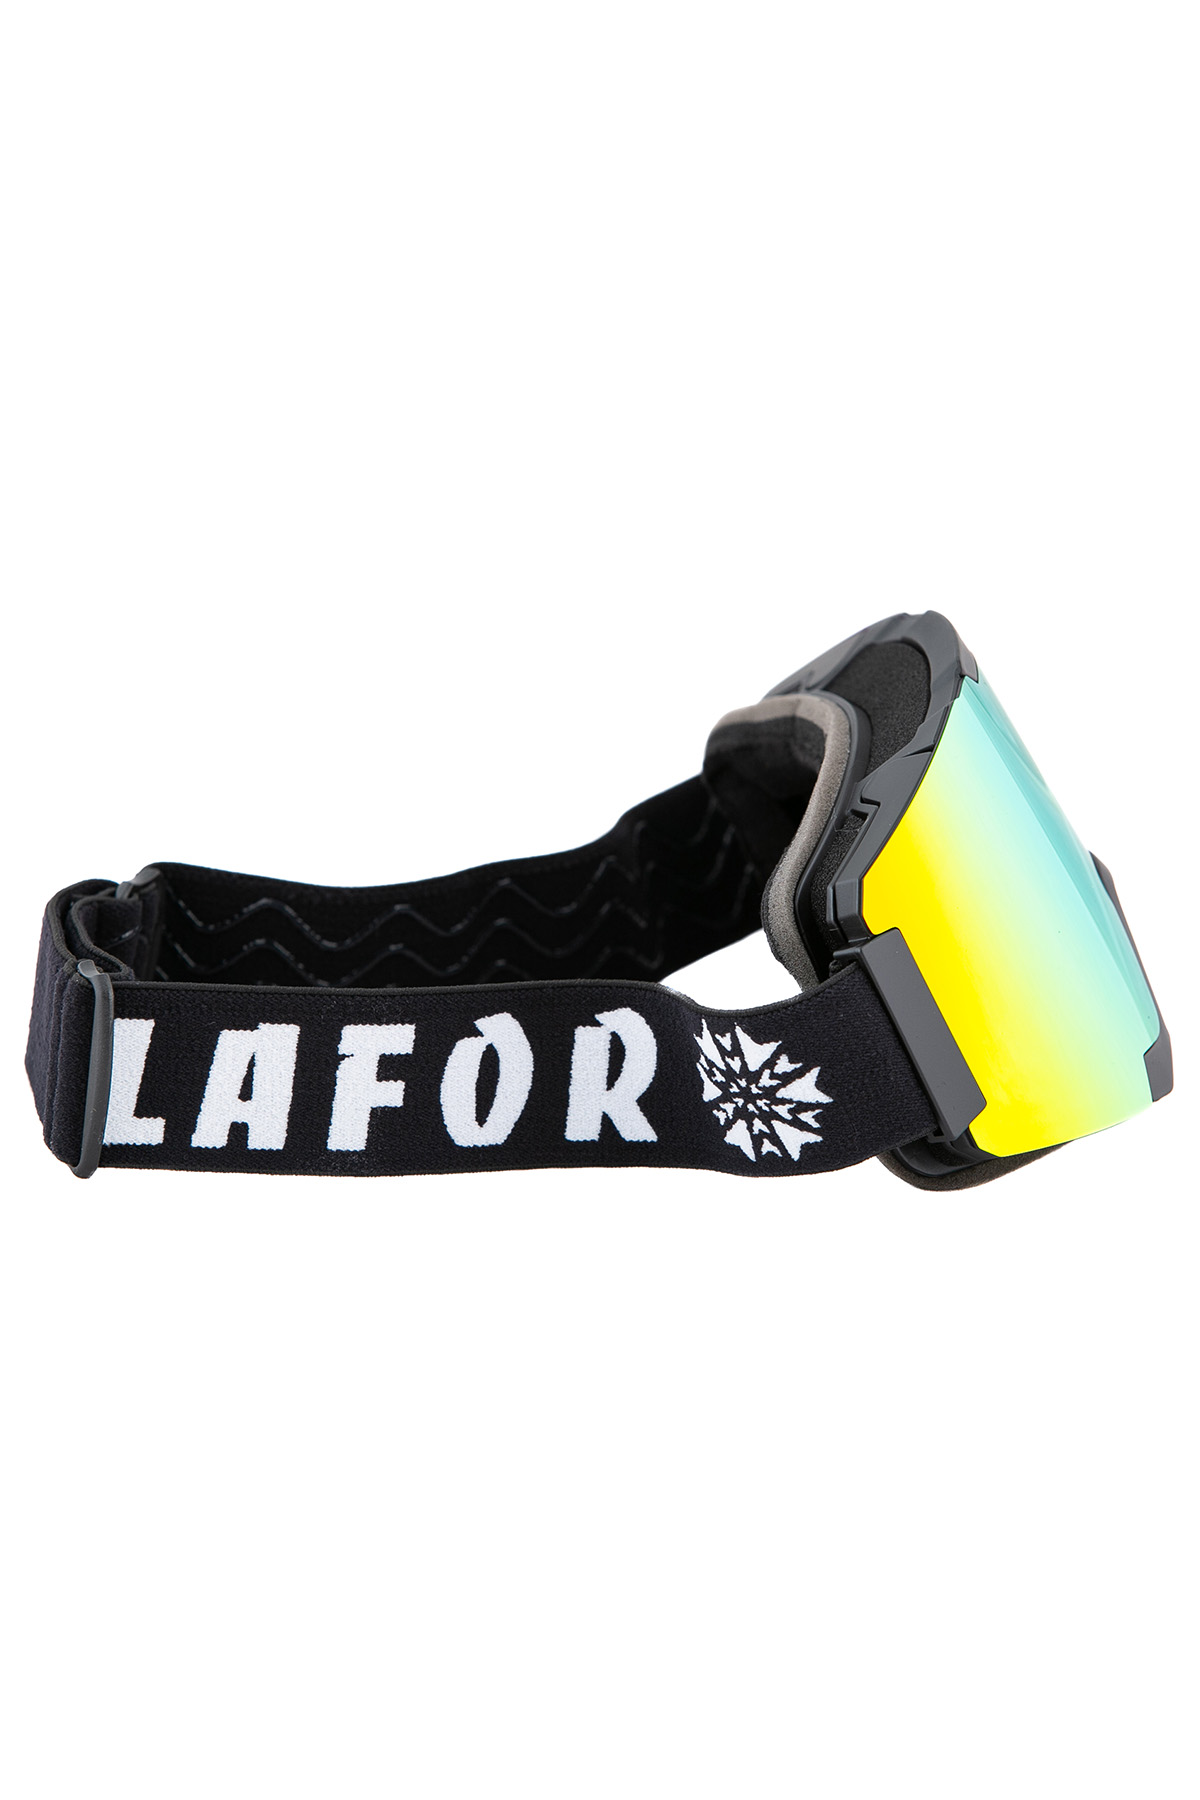 Очки-маска для горнолыжного, мото, вело, экстремальных видов спорта Lafor